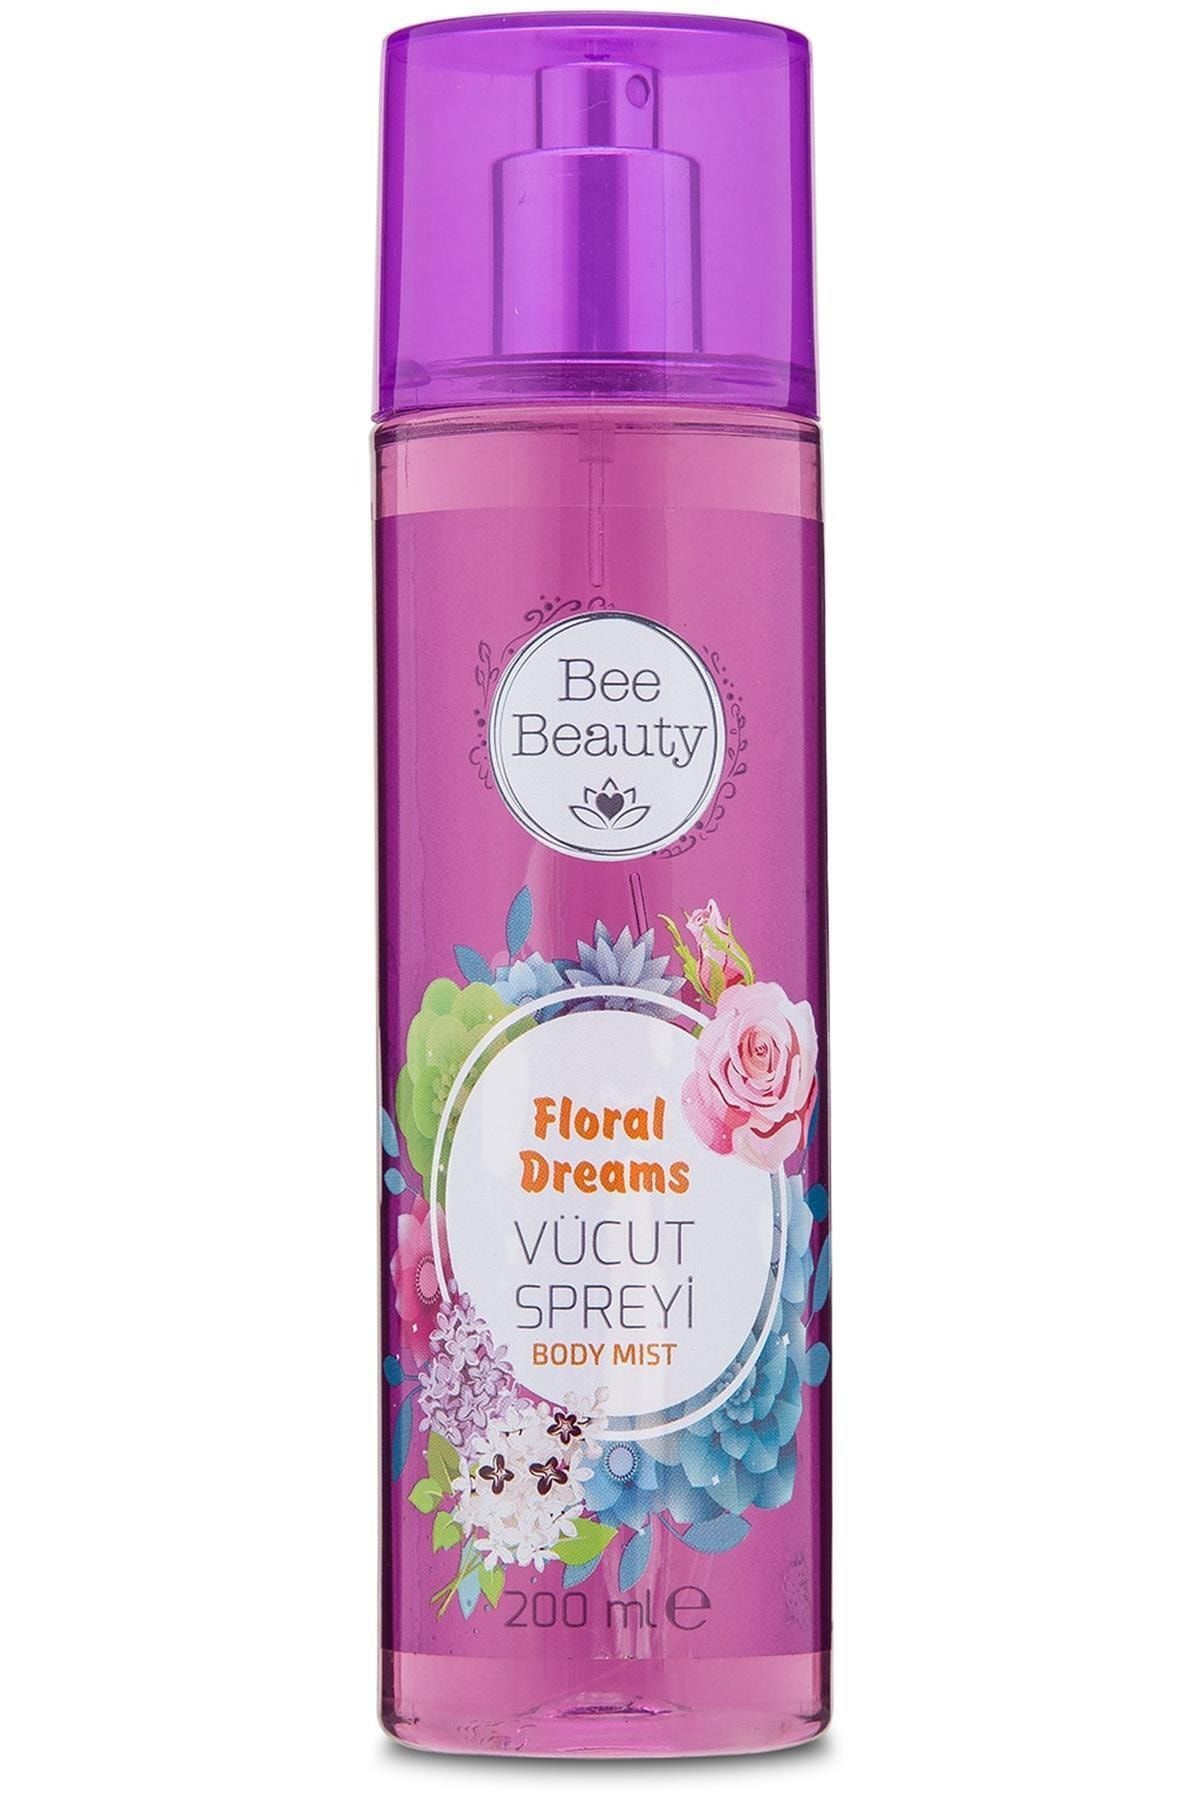 Bee Beauty Marka: Floral Dreams Vücut Spreyi 200 Ml Kategori: Parfüm